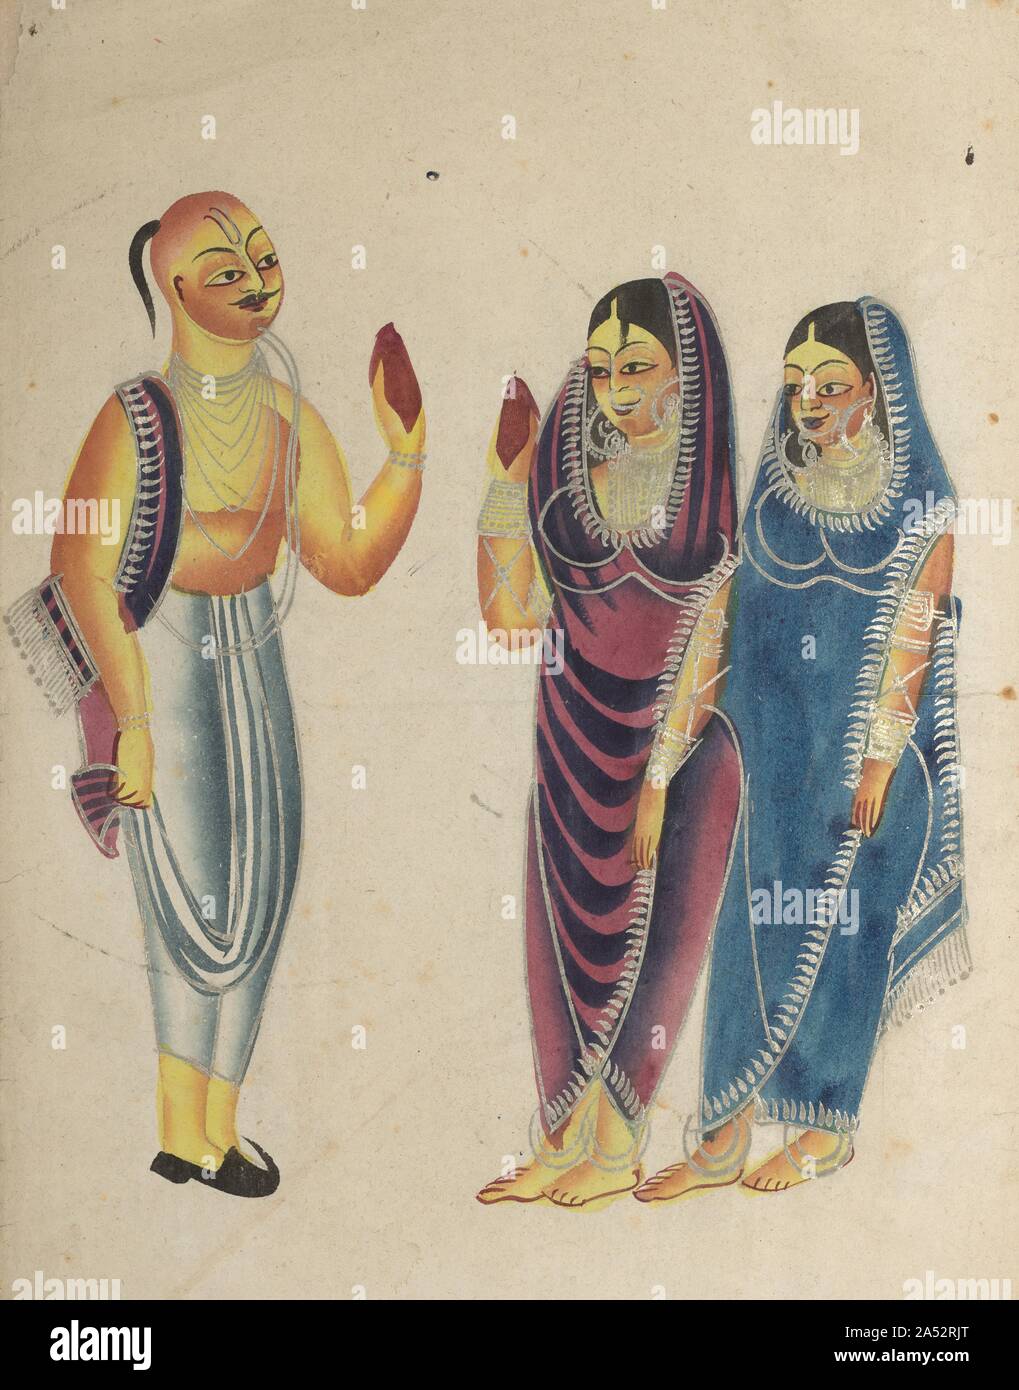 Dévot Vaishnava avec deux femmes, des années 1800. Ici un dévot de Vishnu est le port de chaussures et est représenté avec une certaine ironie comme étant un fervent à la mode, ou peut-être simplement en se faisant passer pour des orthodoxes. Kalighat artistes souvent ciblées hypocrite Vaishnava mendiants dont les intentions avec les femmes sans méfiance sont loin d'innocent. Sur son front on trouve des marques sectaire portés par les adorateurs de Vishnu. L'homme&# x2019;s main droite et l'une des femmes&# x2019;s main gauche, à la fois lieu en altitude, sont de couleur rouge, peut-être pour indiquer qu'ils ont été décorés au henné. Banque D'Images